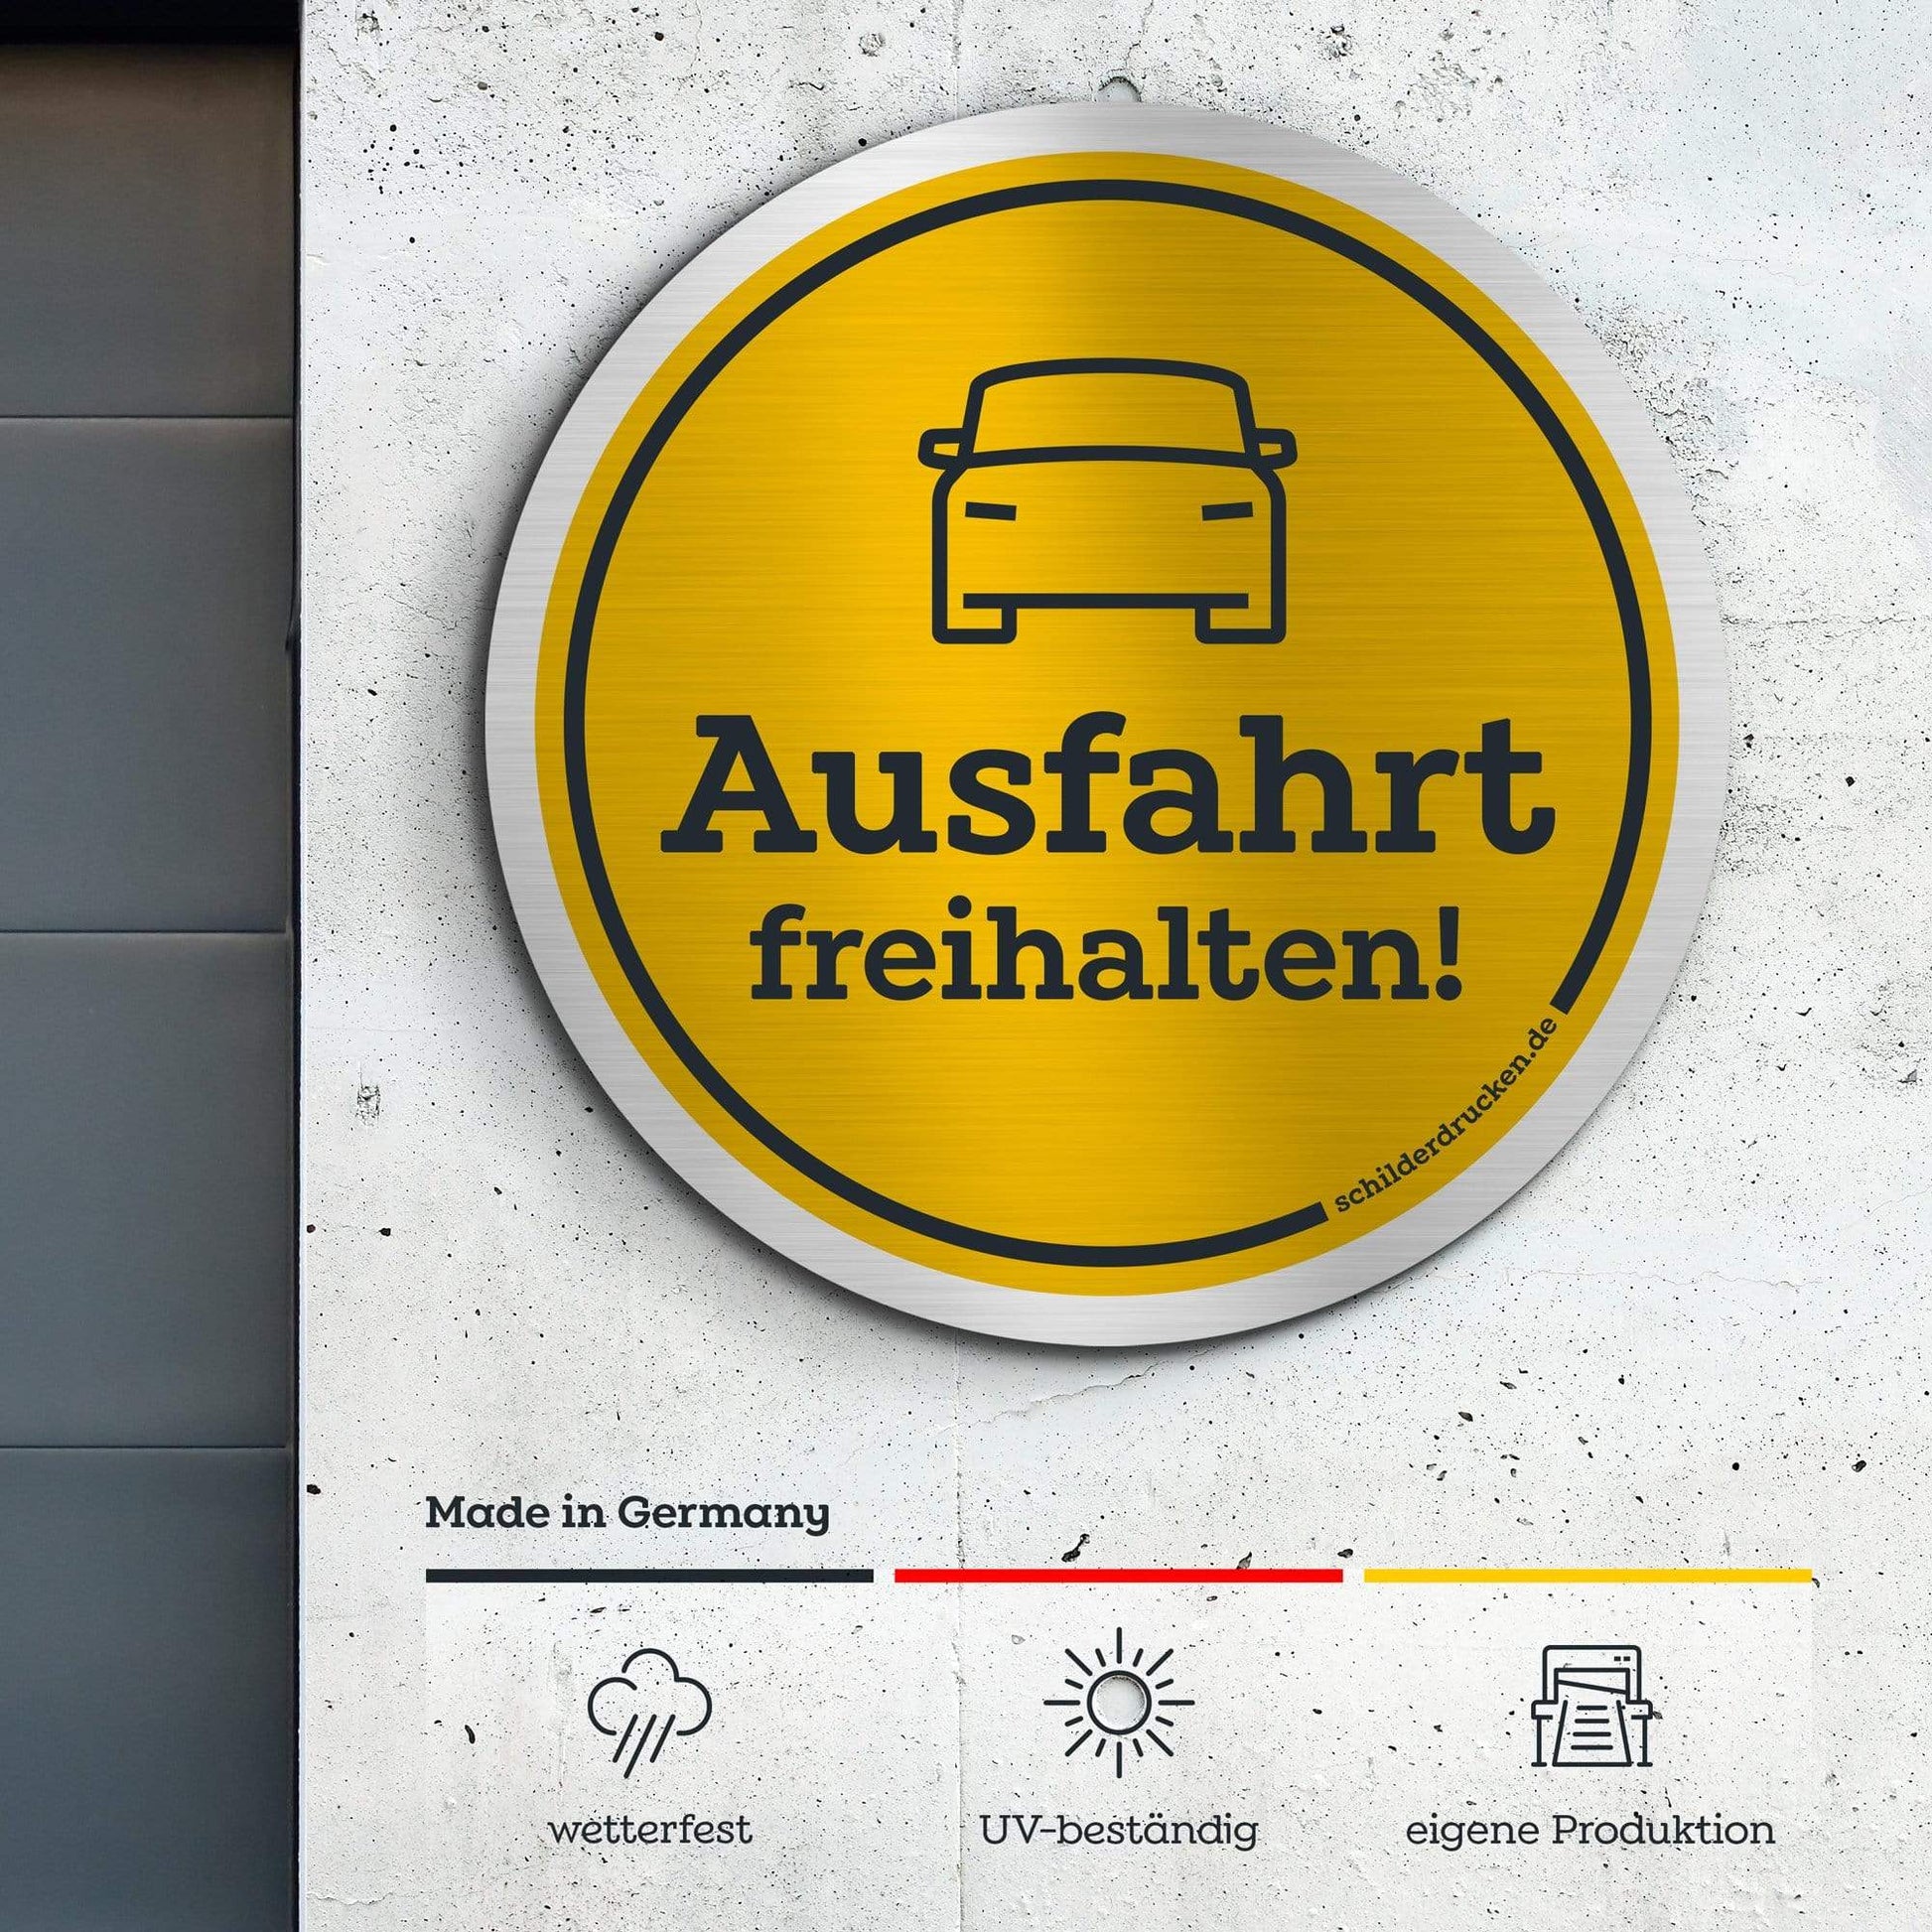 Fahrzeuge "Ausfahrt freihalten!" 10 x 10 cm / silber gebürstet / Alu-Dibond online drucken lassen bei schilderdrucken.de